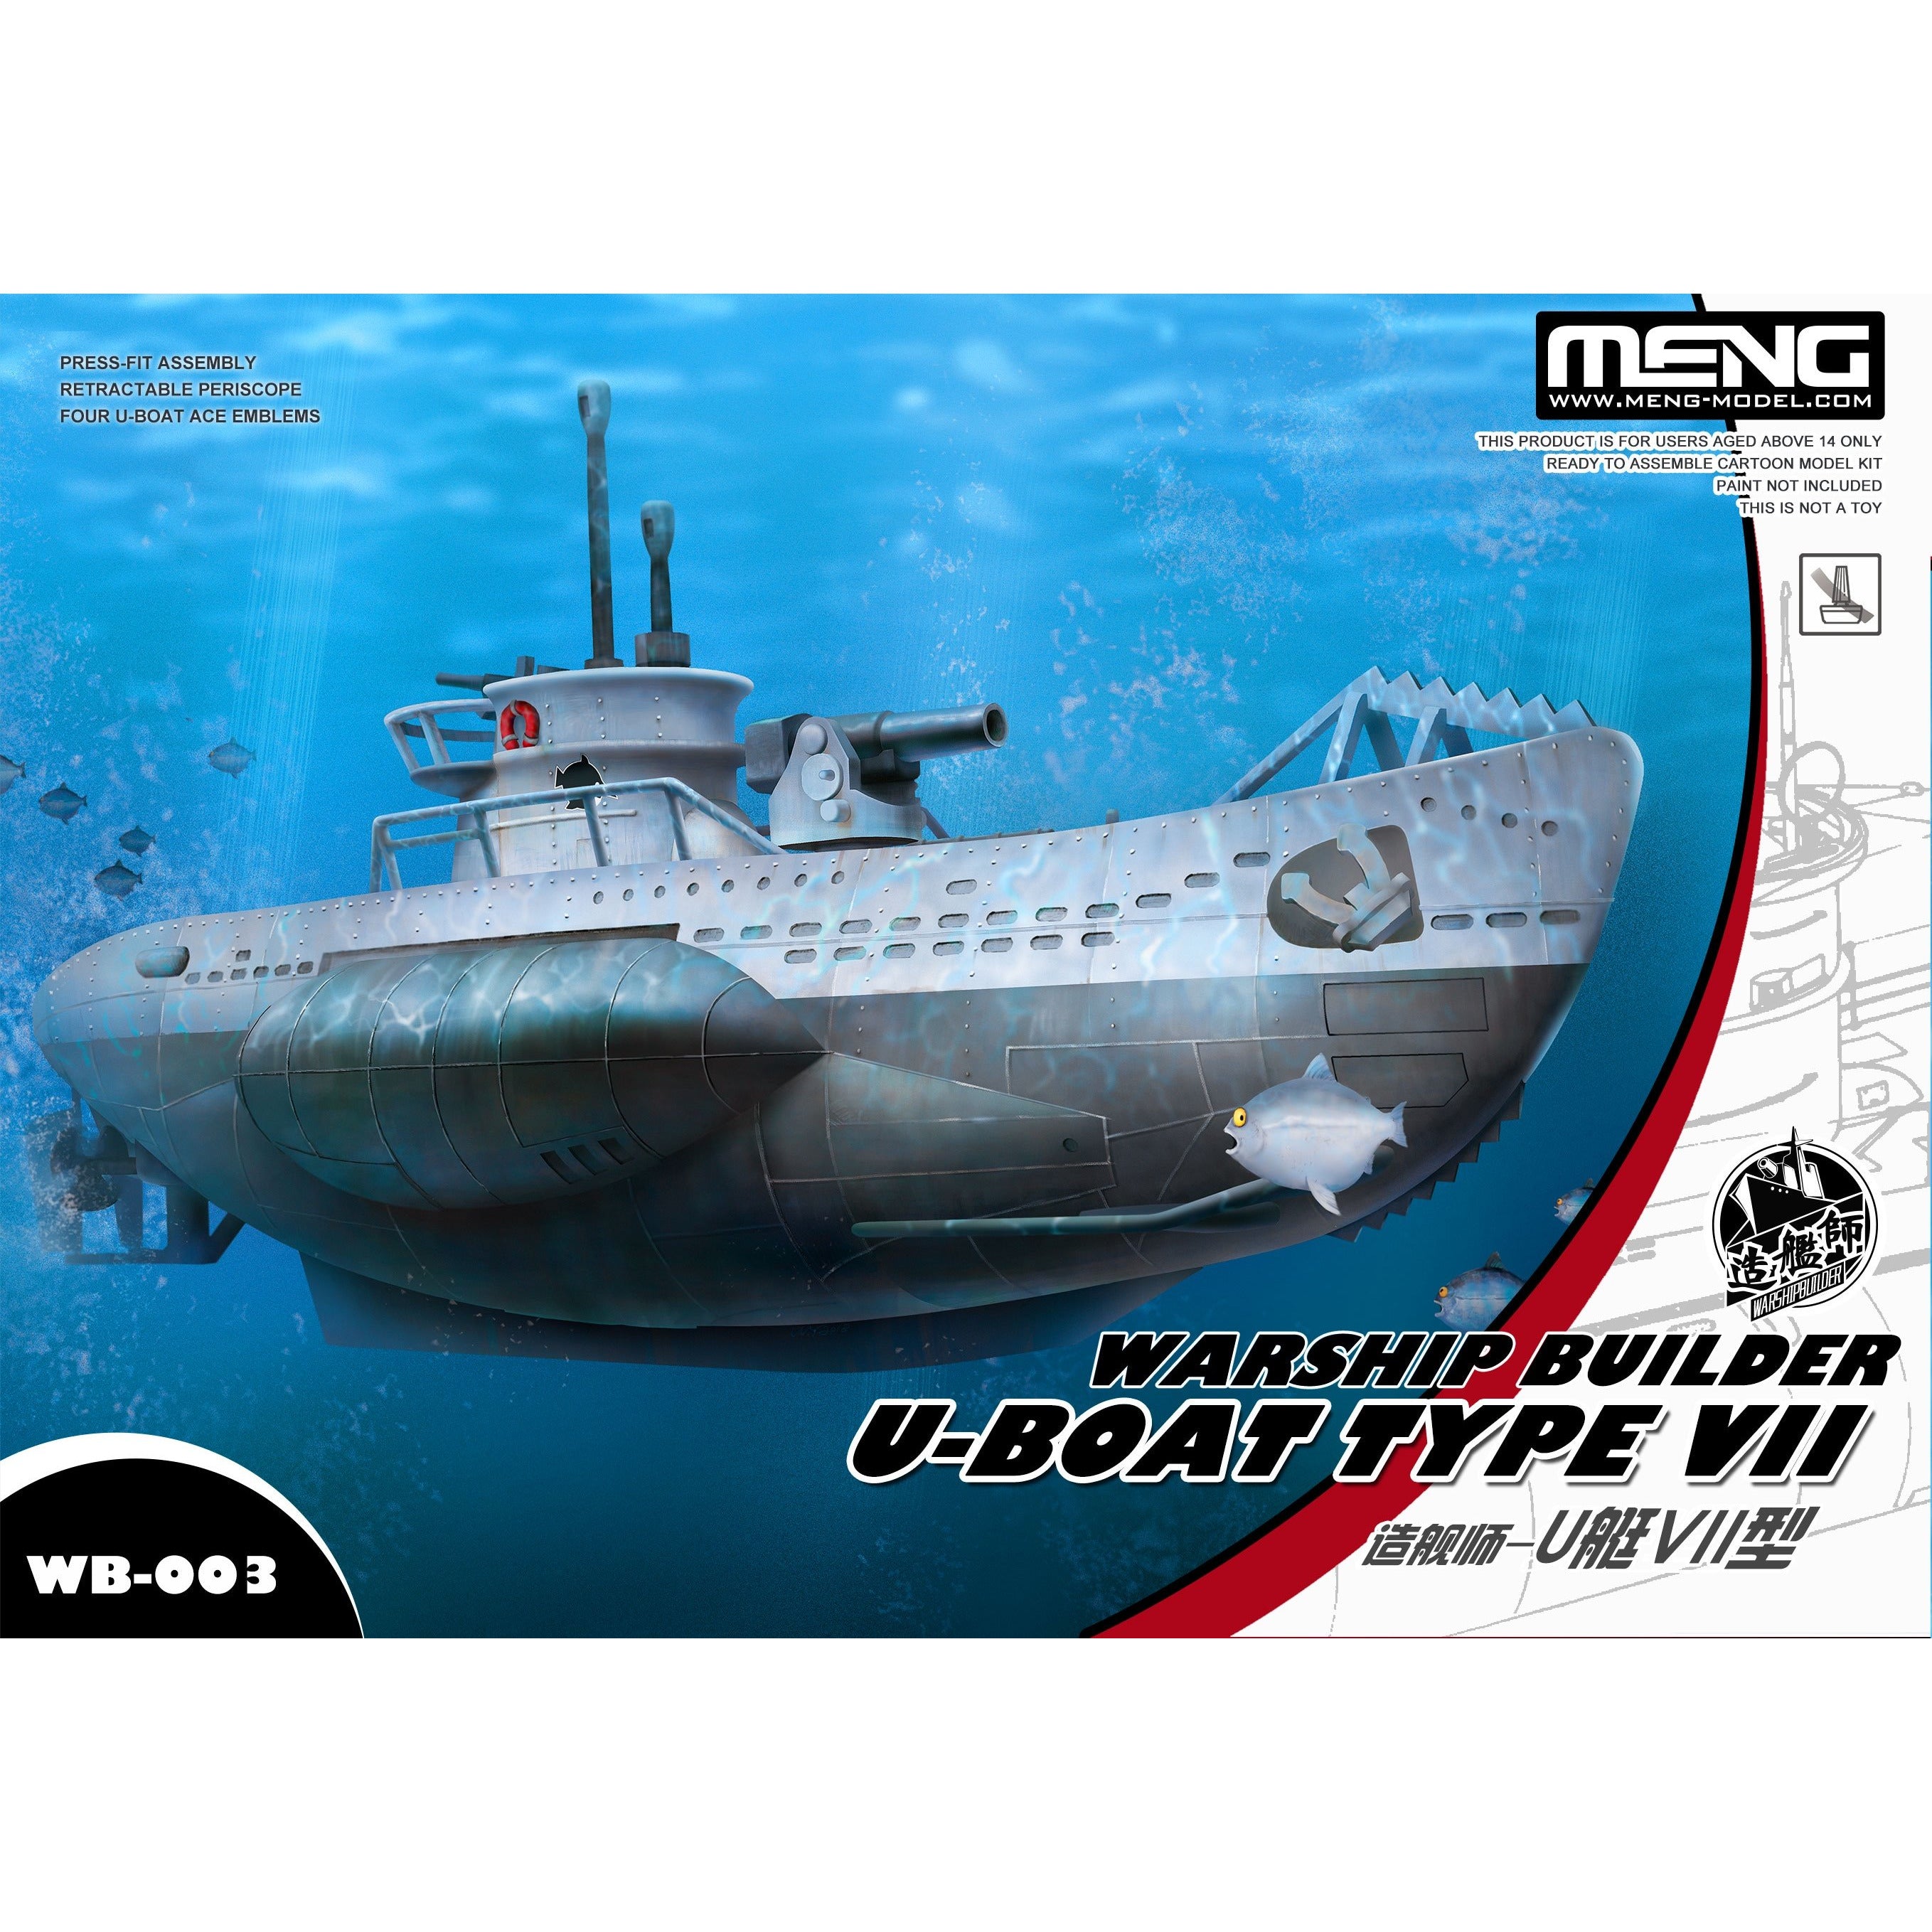 U-Boat Type VII #WB-003 Super Deformed Model Kit by Meng